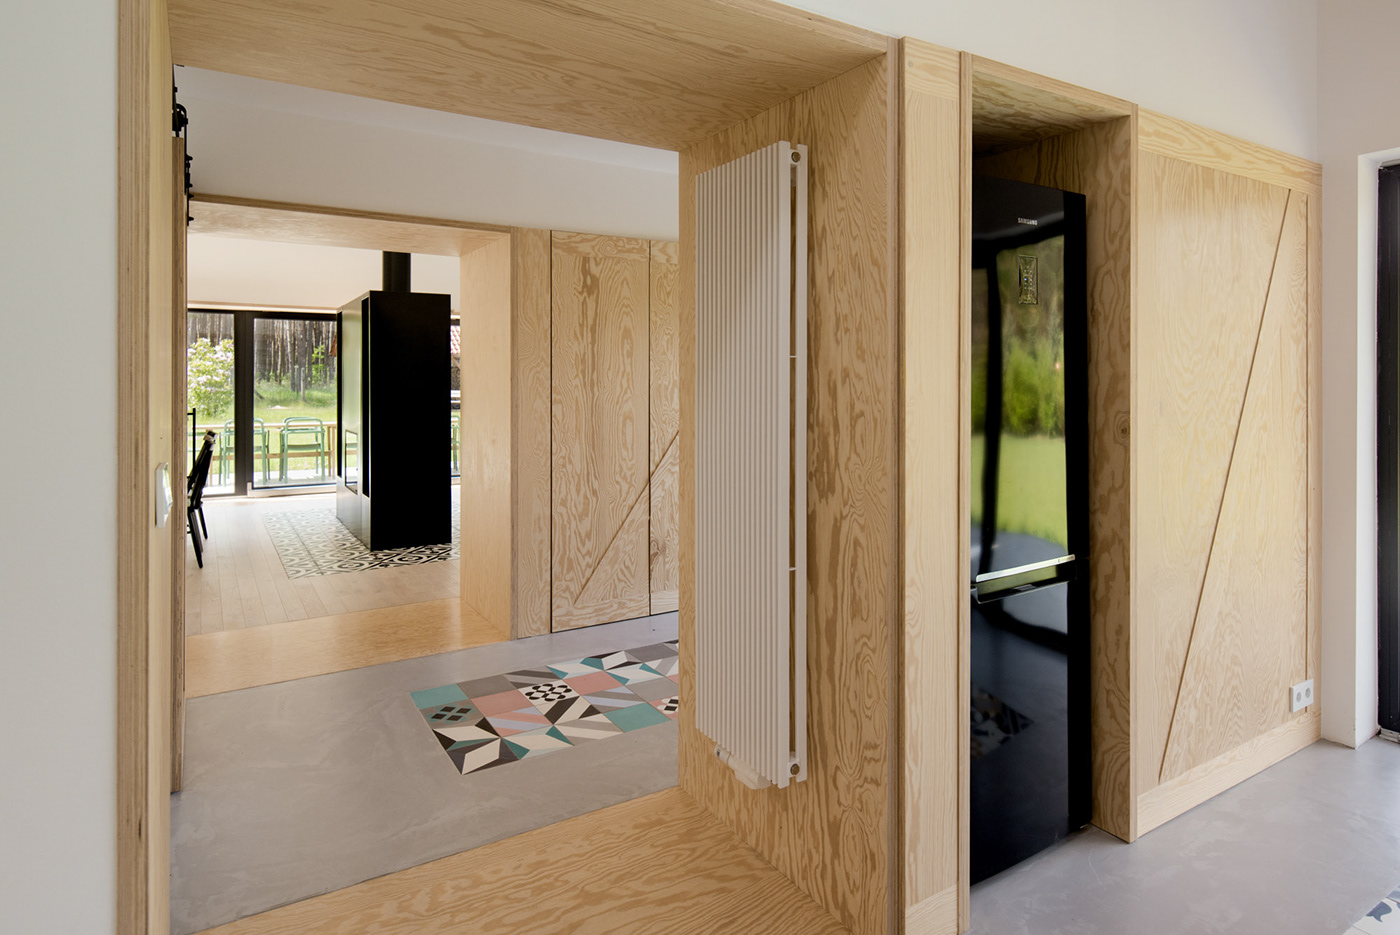 forest house Interior living modelina architekci poland wood